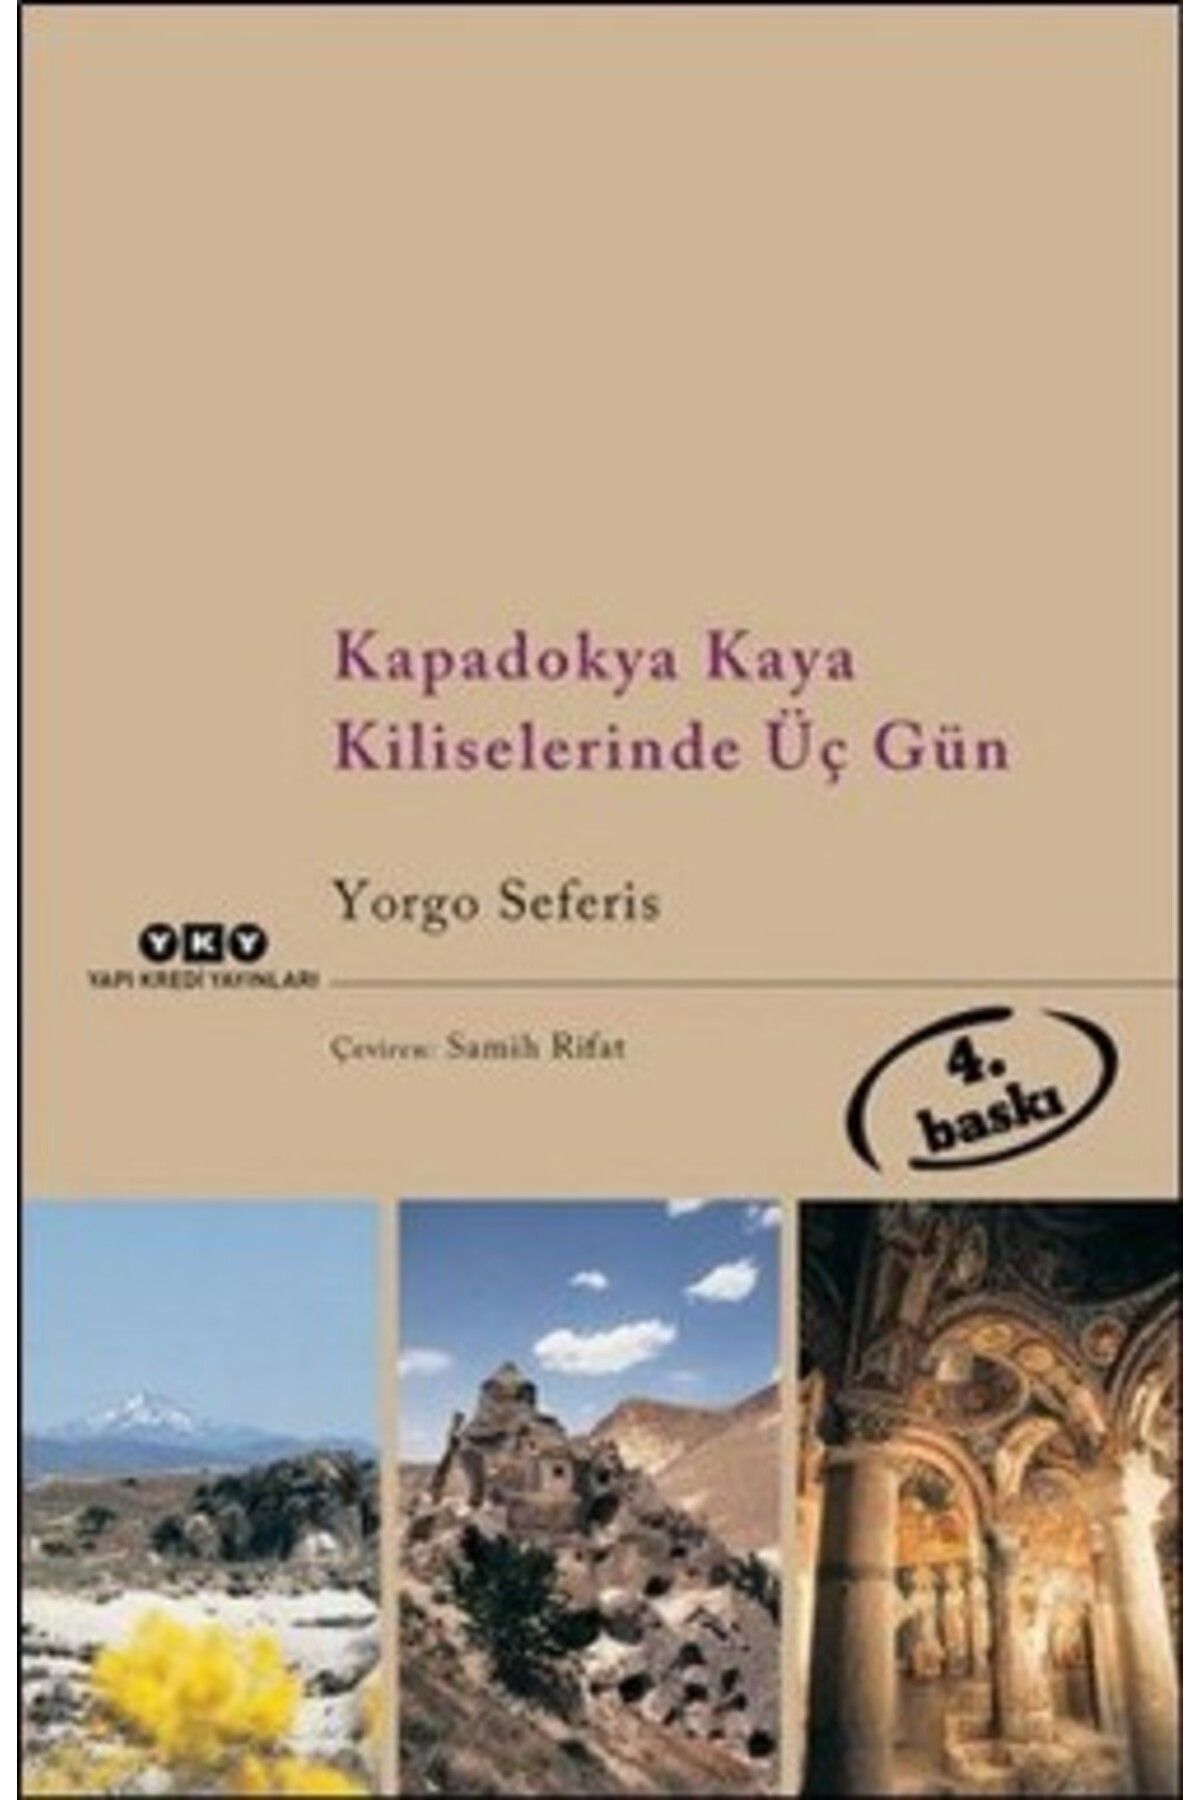 Yapı Kredi Yayınları Kapadokya Kaya Kiliselerinde Üç Gün kitabı - Yorgo Seferis - Yapı Kredi Yayınları